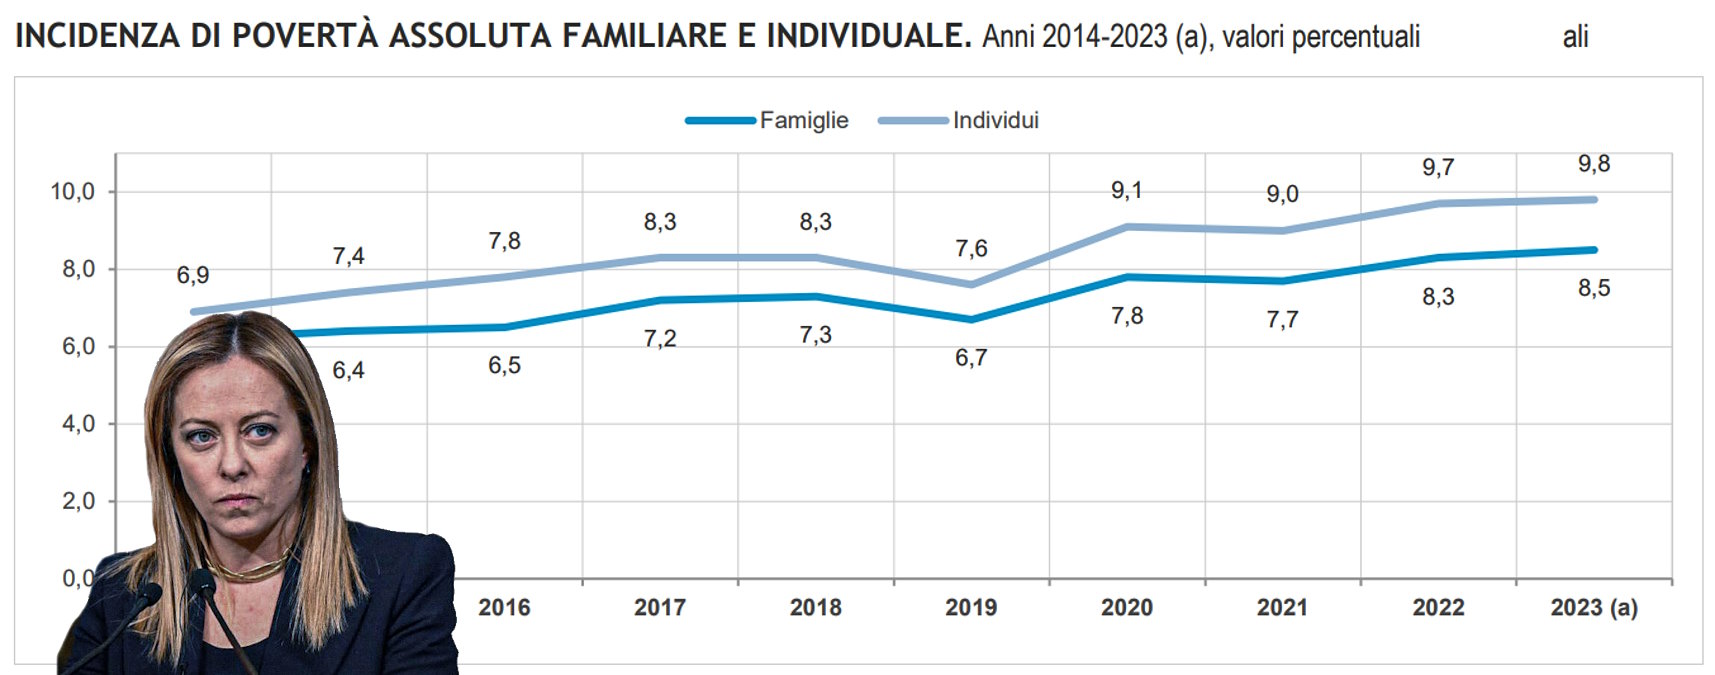 Istat: nel 2023 in aumento povertà e spesa media per famiglia